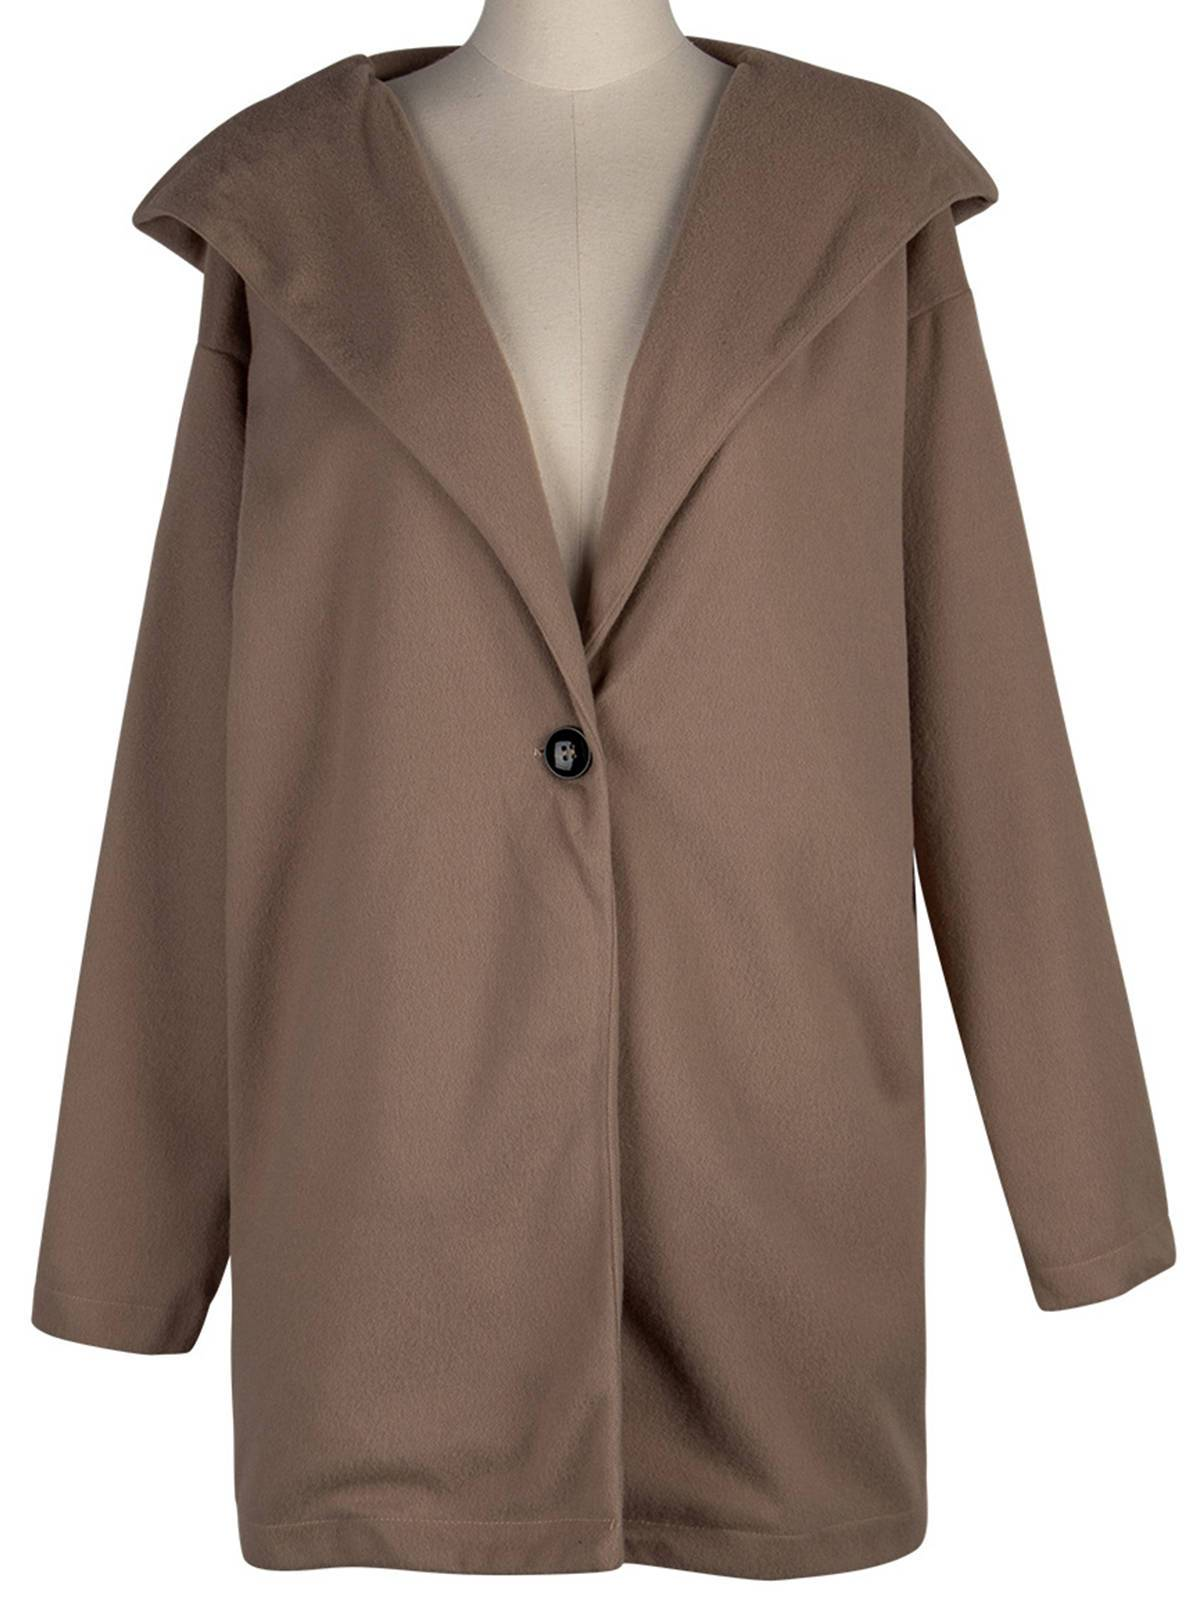 Round neck loose hooded woolen coat